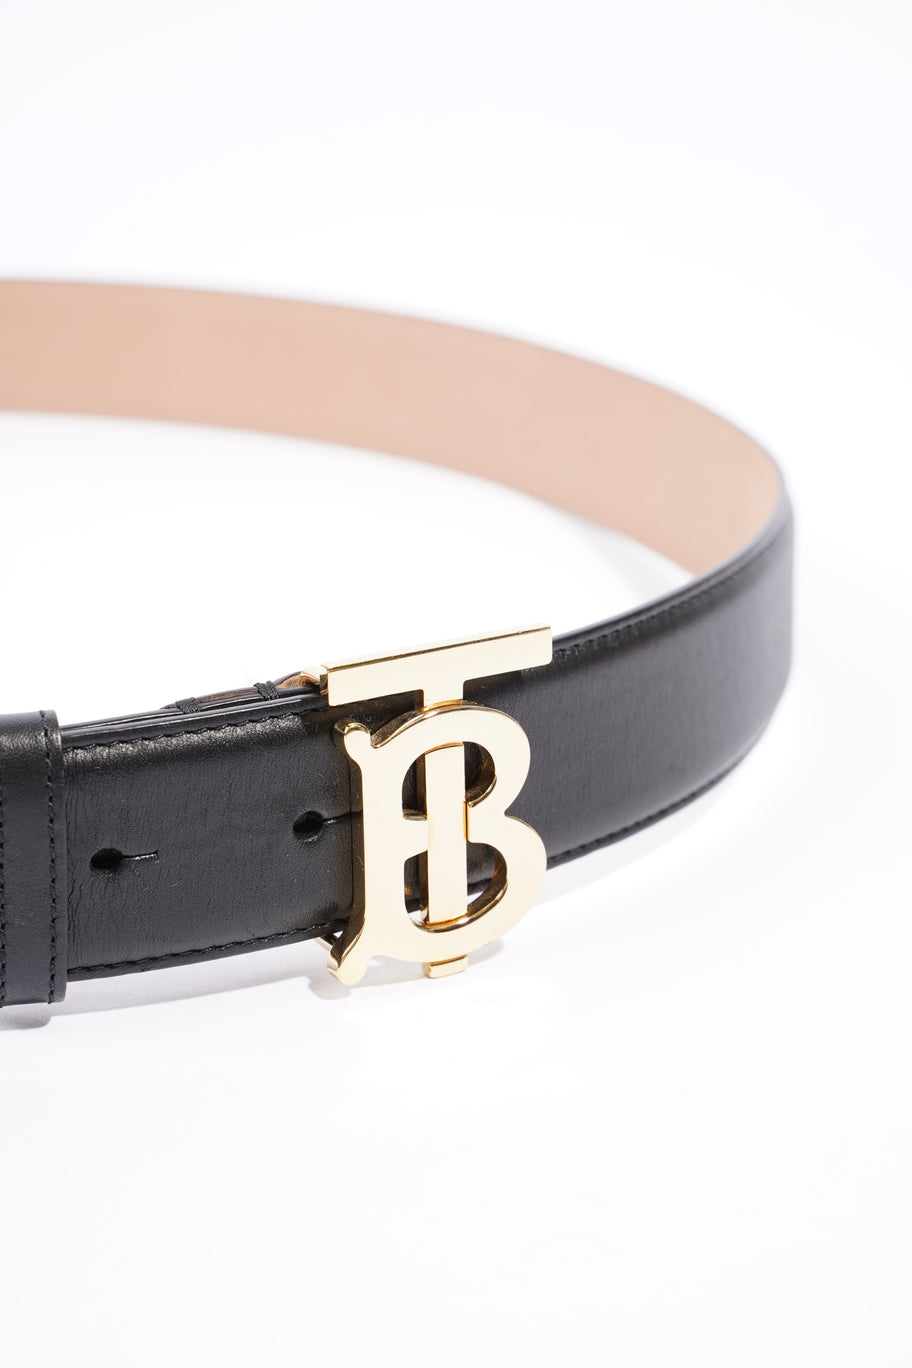 TB Belt Black Leather Large Image 3